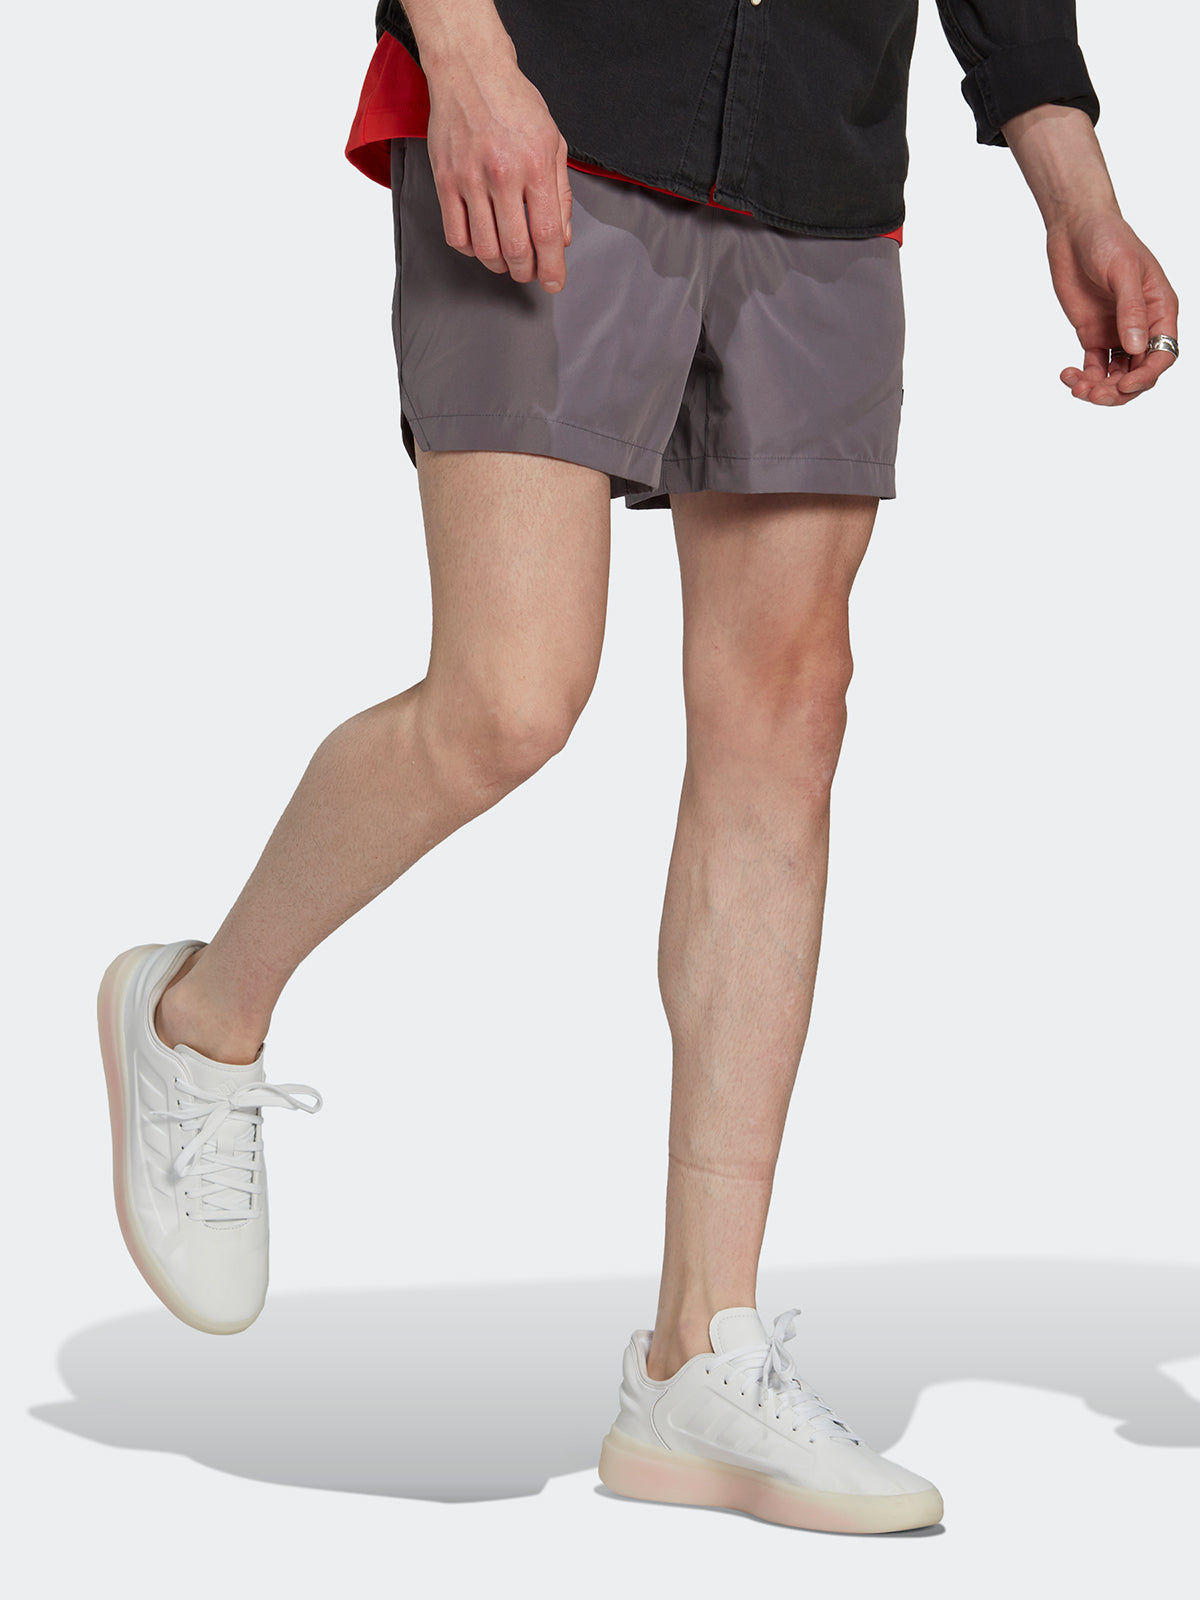 מכנסי אימון קצרים עם הבלט לוגו/ גברים- adidas performance|אדידס פרפורמנס